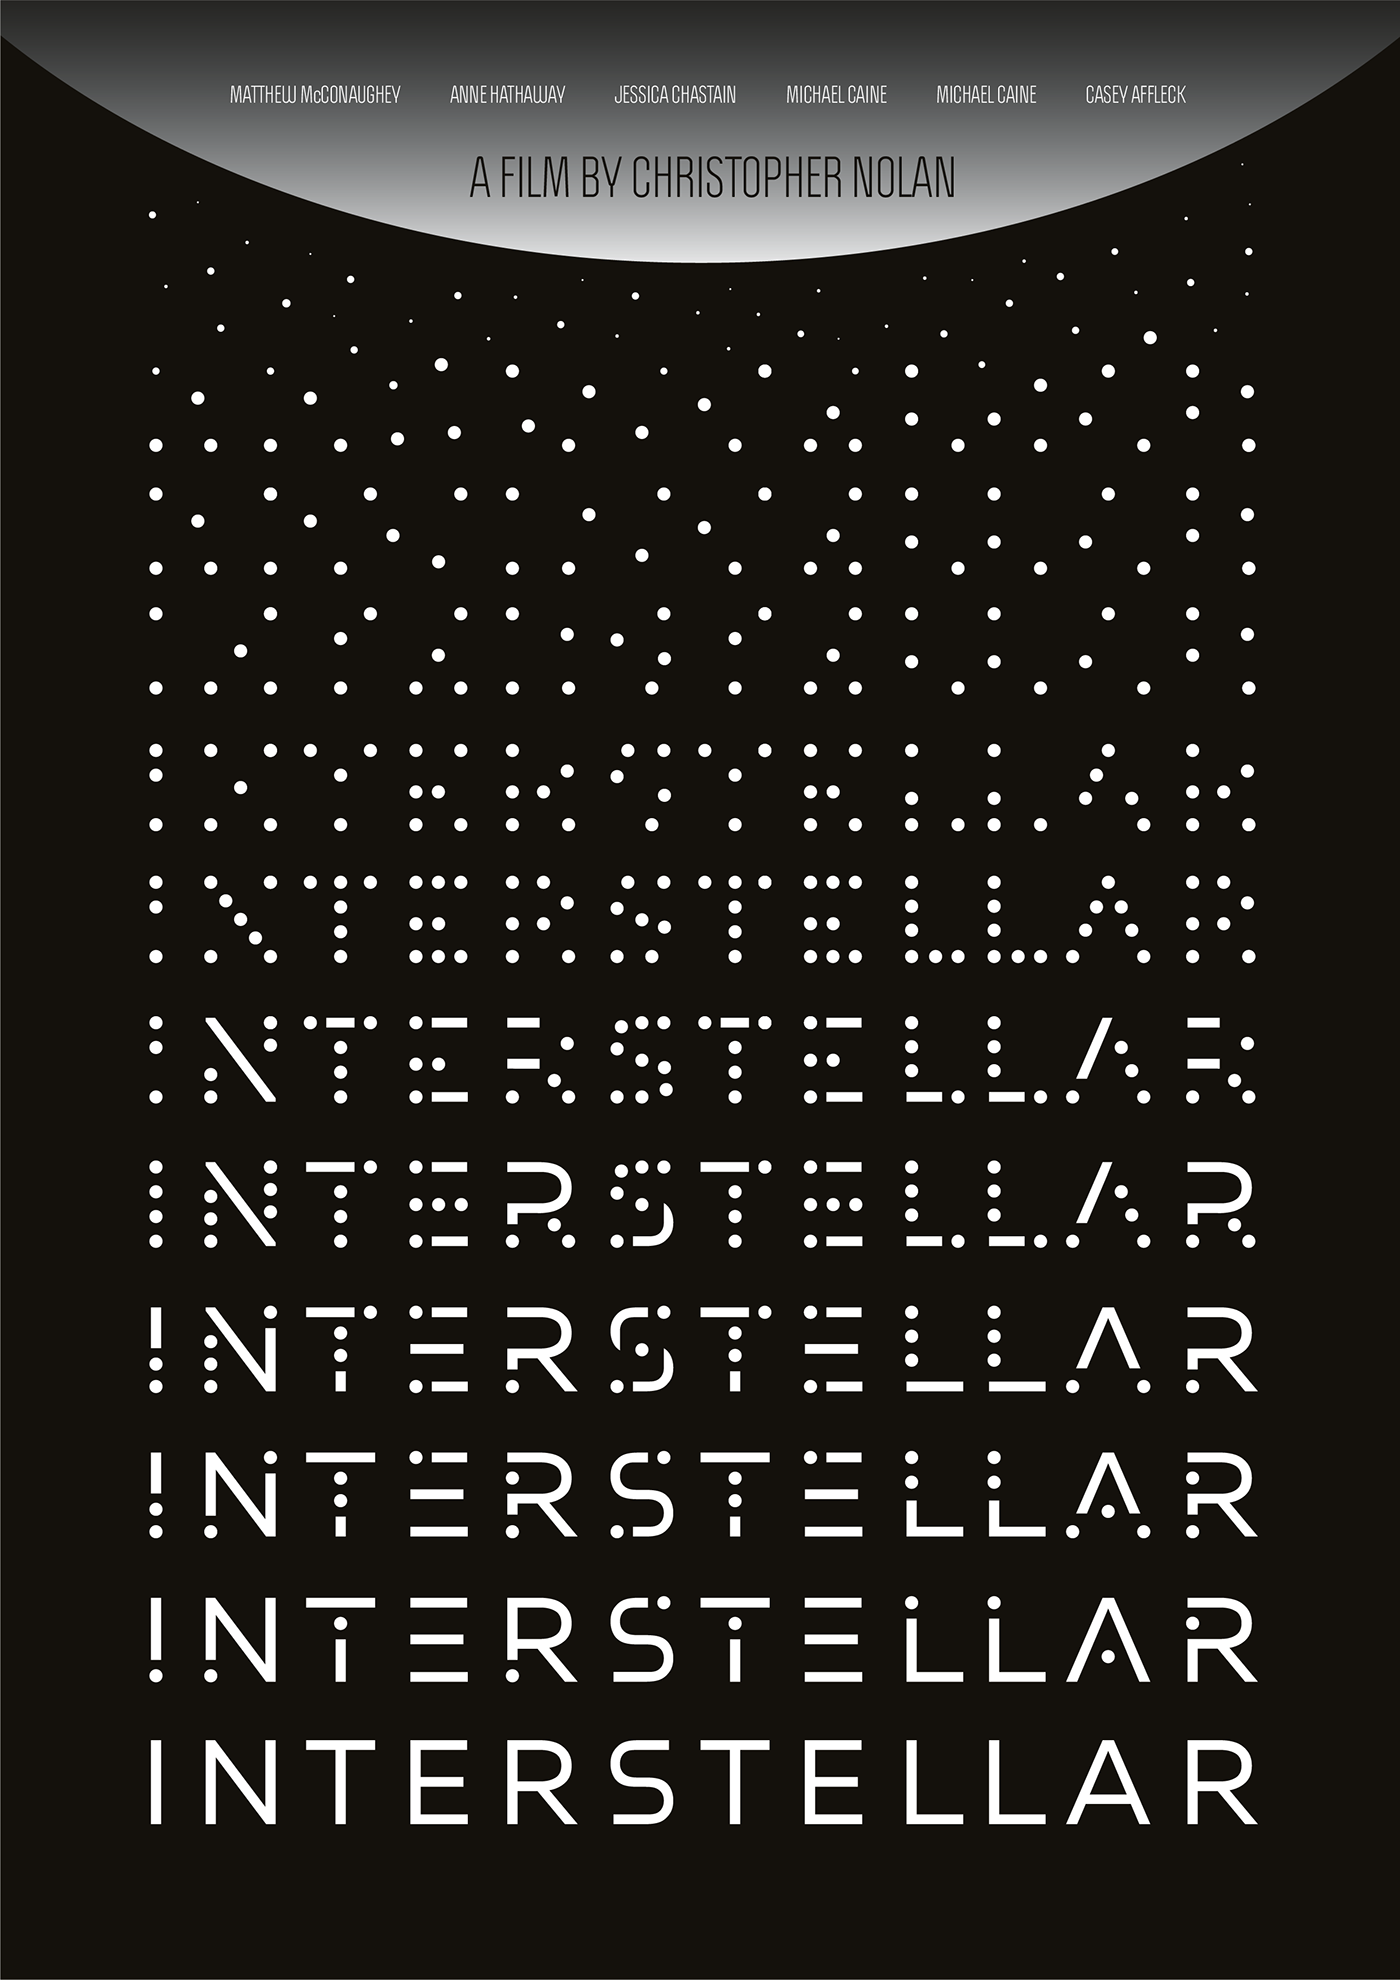 christopher nolan inception interstellar minimalist Monochromatic movie Poster Design posters prestige typographic